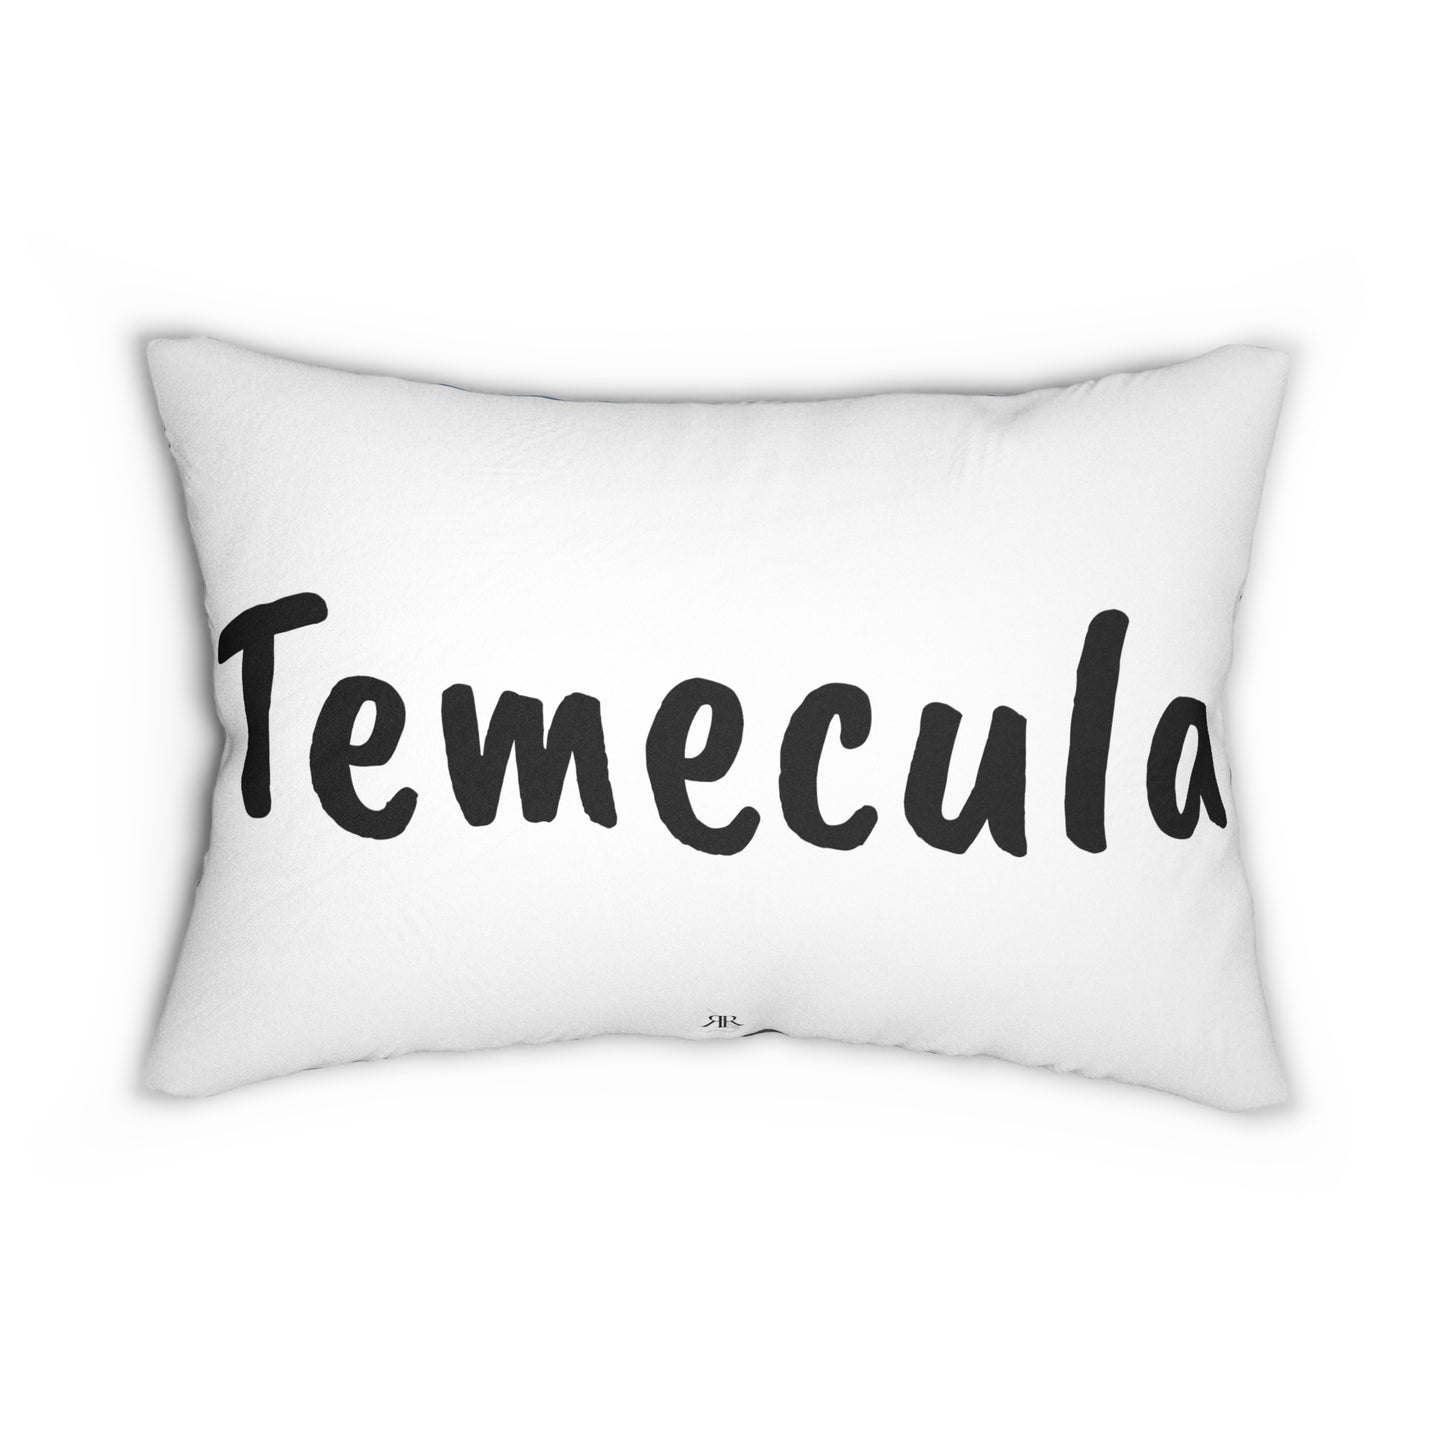 Temecula Lumbar Pillow featuring "Sunset at the Villa" (GBV) painting and "Temecula"